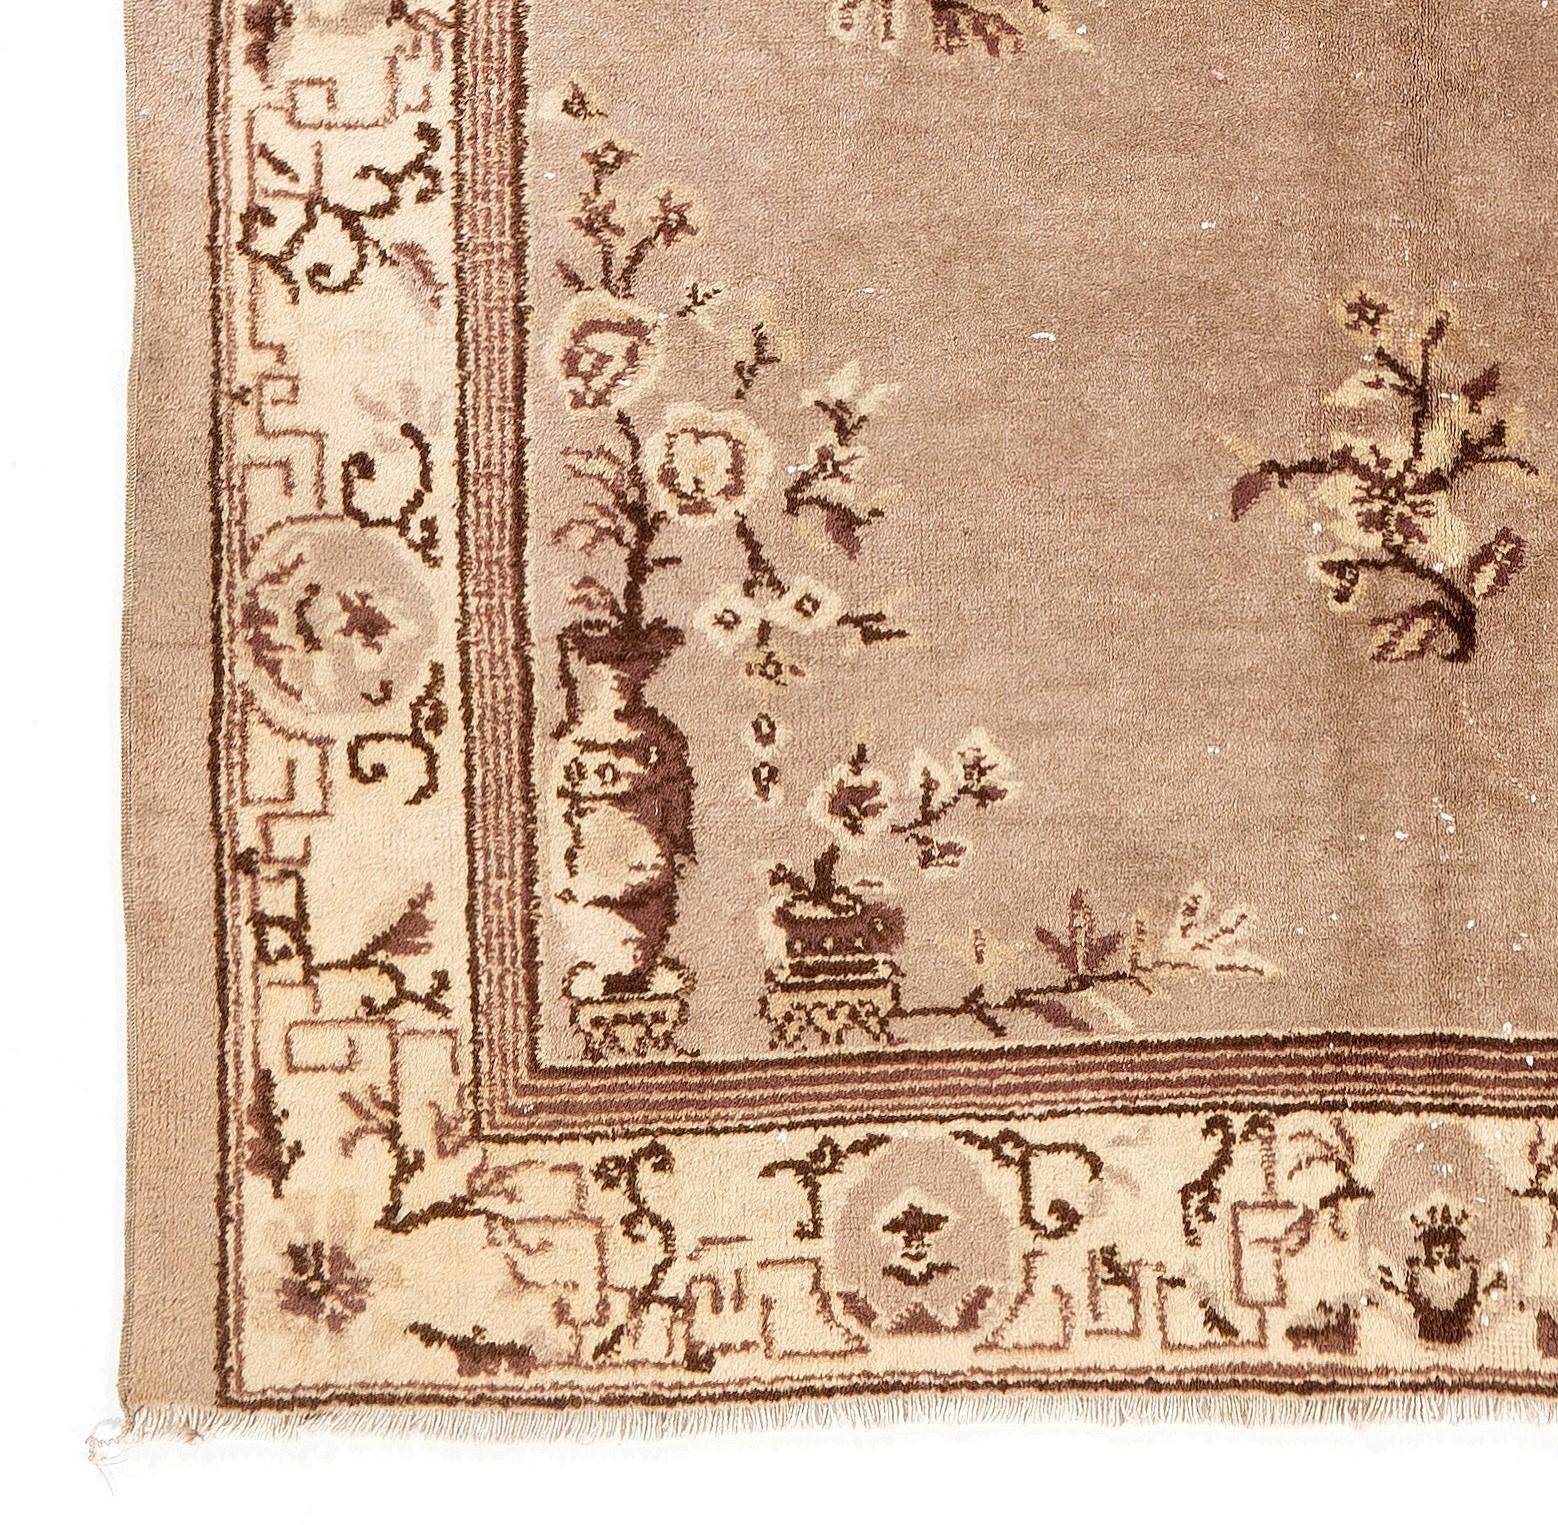 Ein alter handgeknüpfter chinesischer Teppich mit einem zentralen Medaillonmuster, das Rosetten und eckige Blätter in Stahl mit braunen Akzenten auf einem verblassten taupefarbenen Feld zeigt. 

Die braunen Umrisse der Rosetten sowie die mäandernden